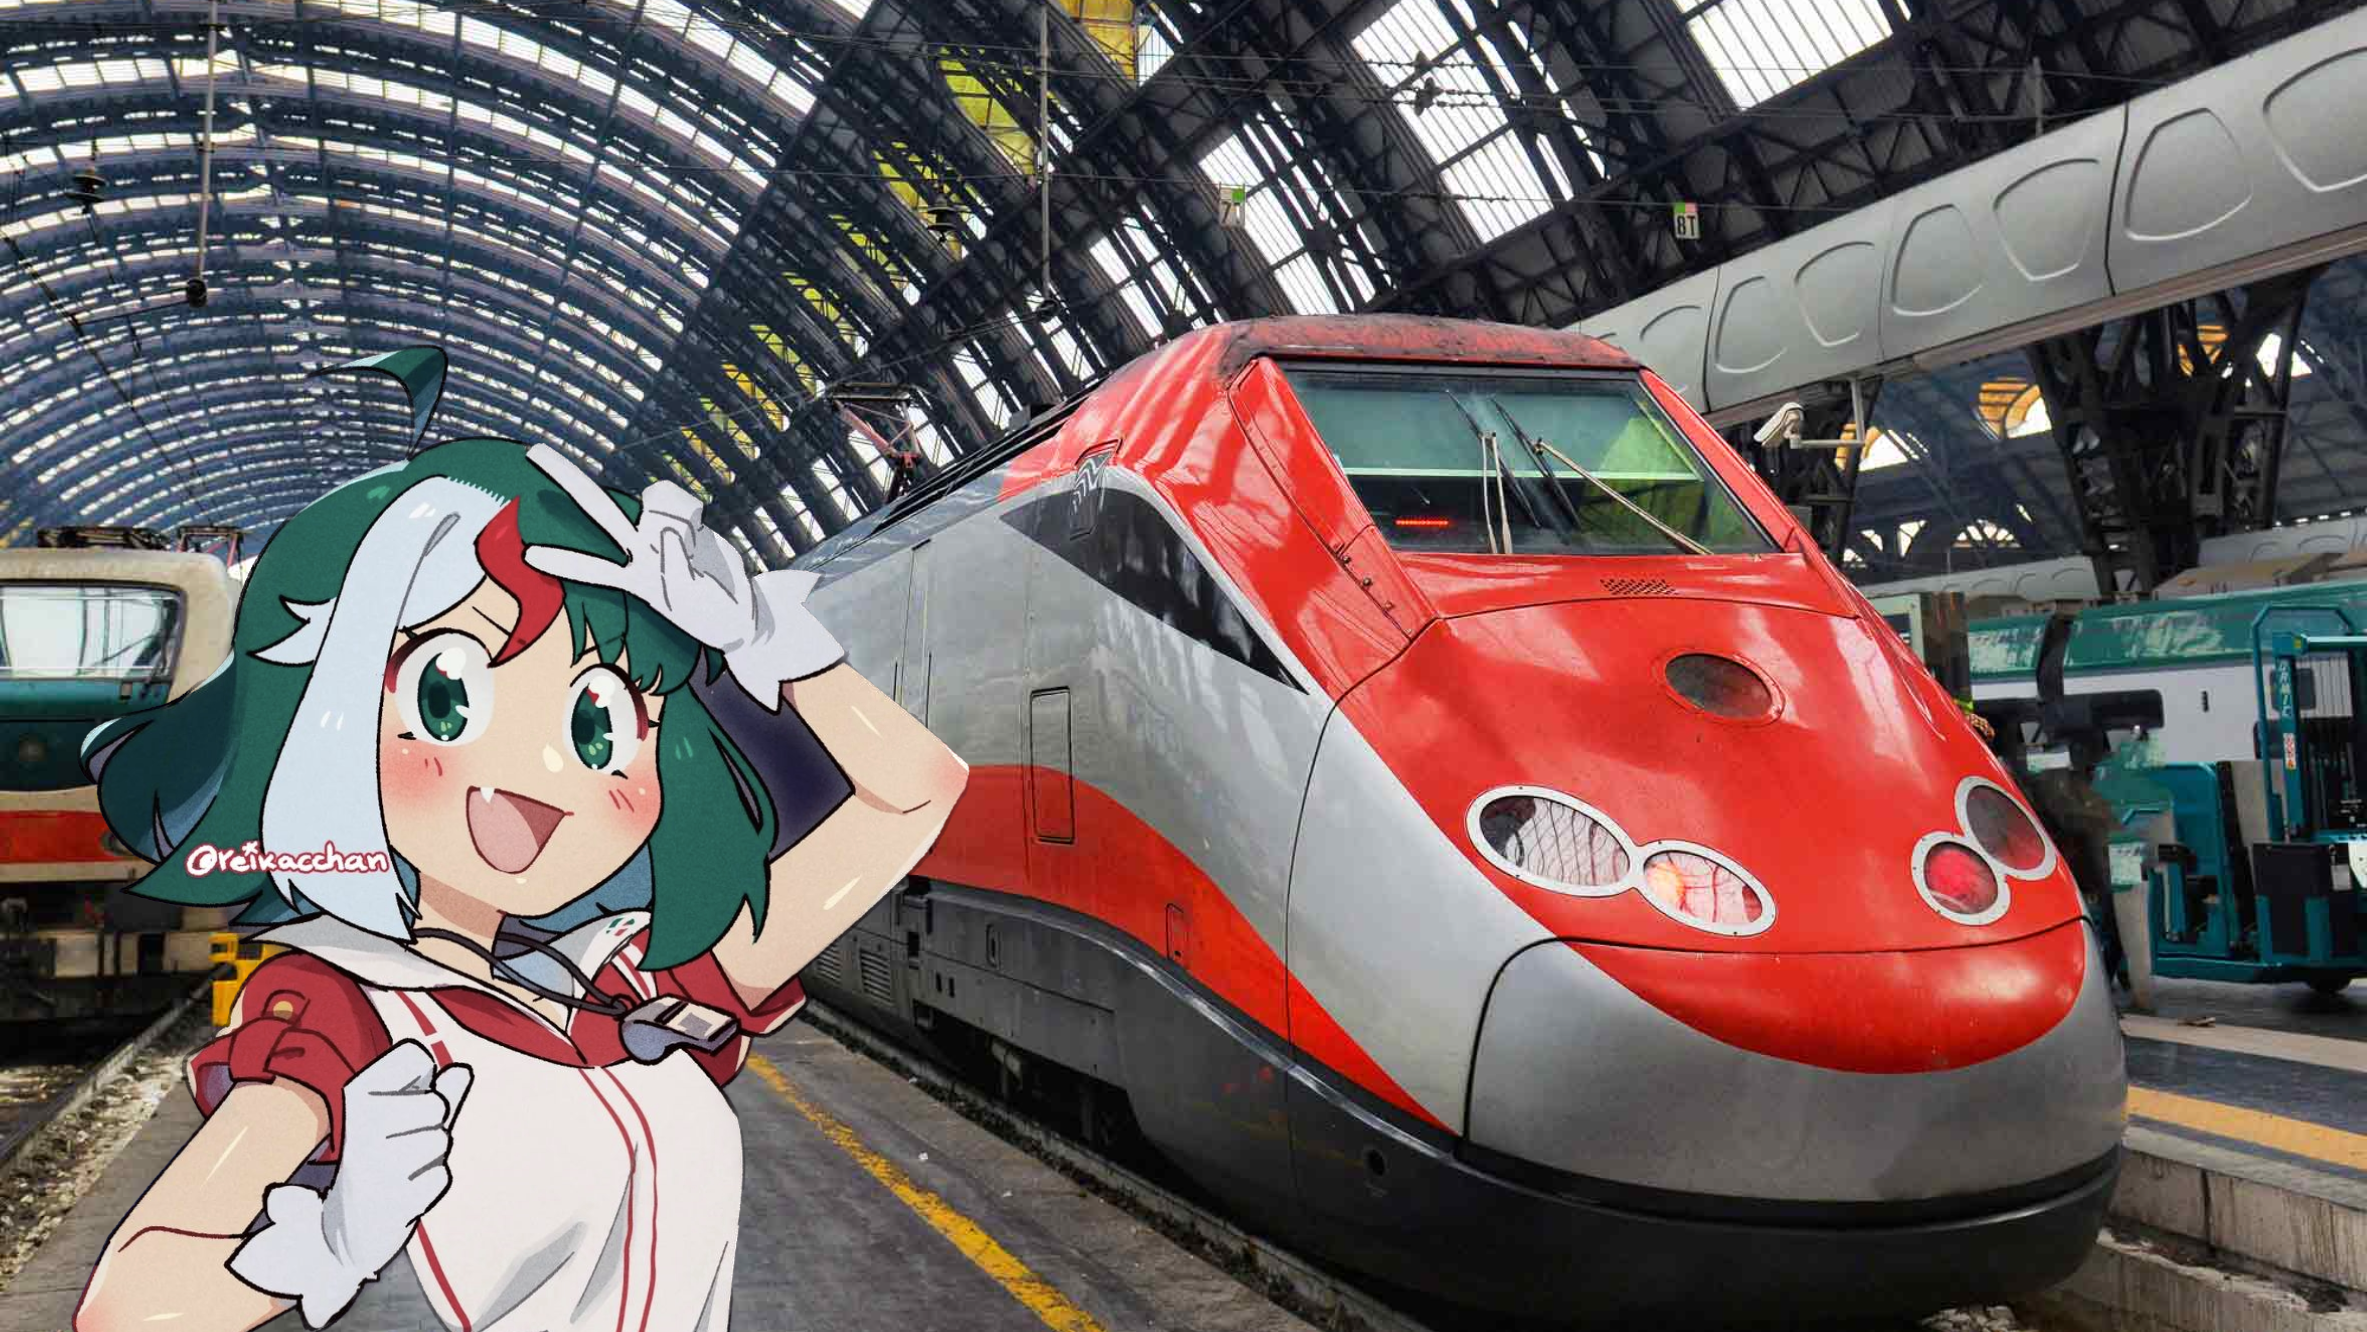 Trenitalia anime girl